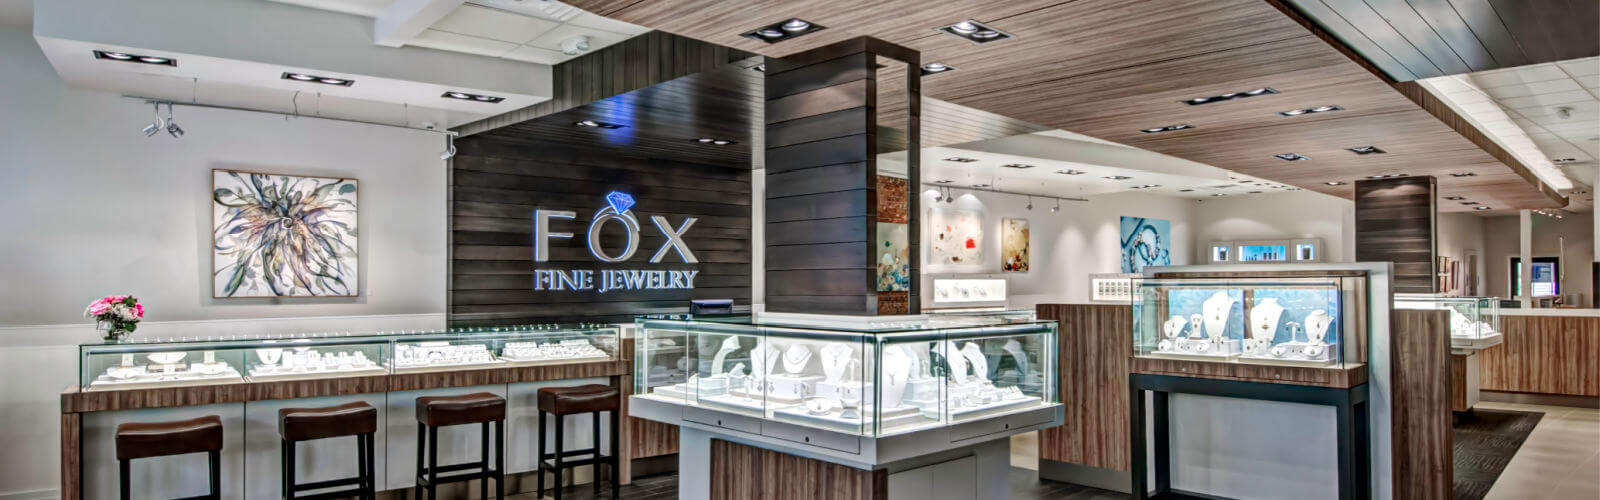 Fox Fine Jewelry Store Interior